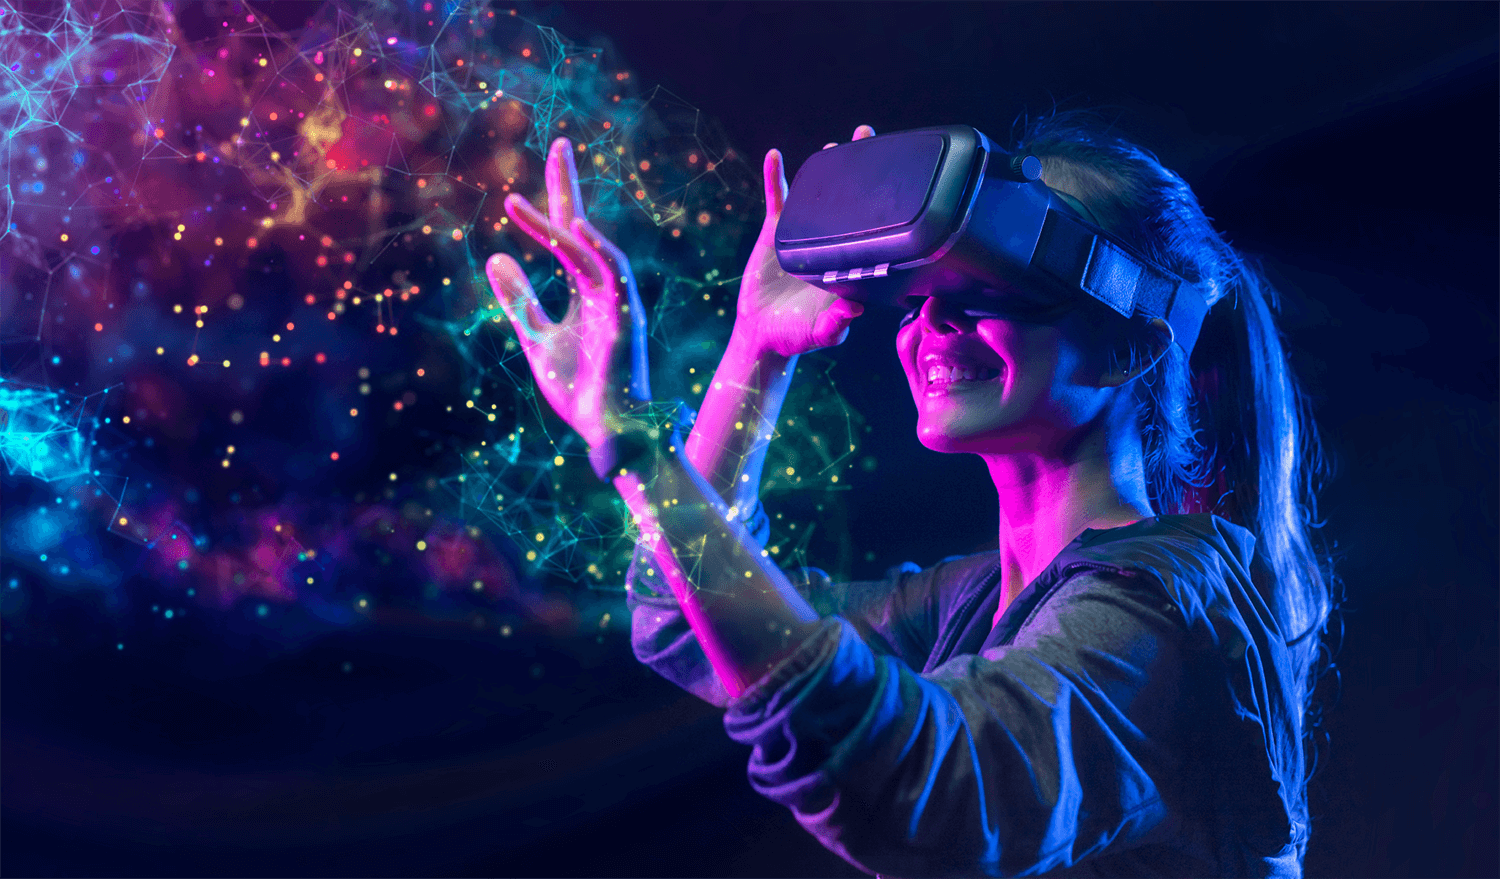 图片展示一位女性戴着虚拟现实头盔，伸手触摸光影交错的虚拟空间，表情愉悦，沉浸在高科技体验中。